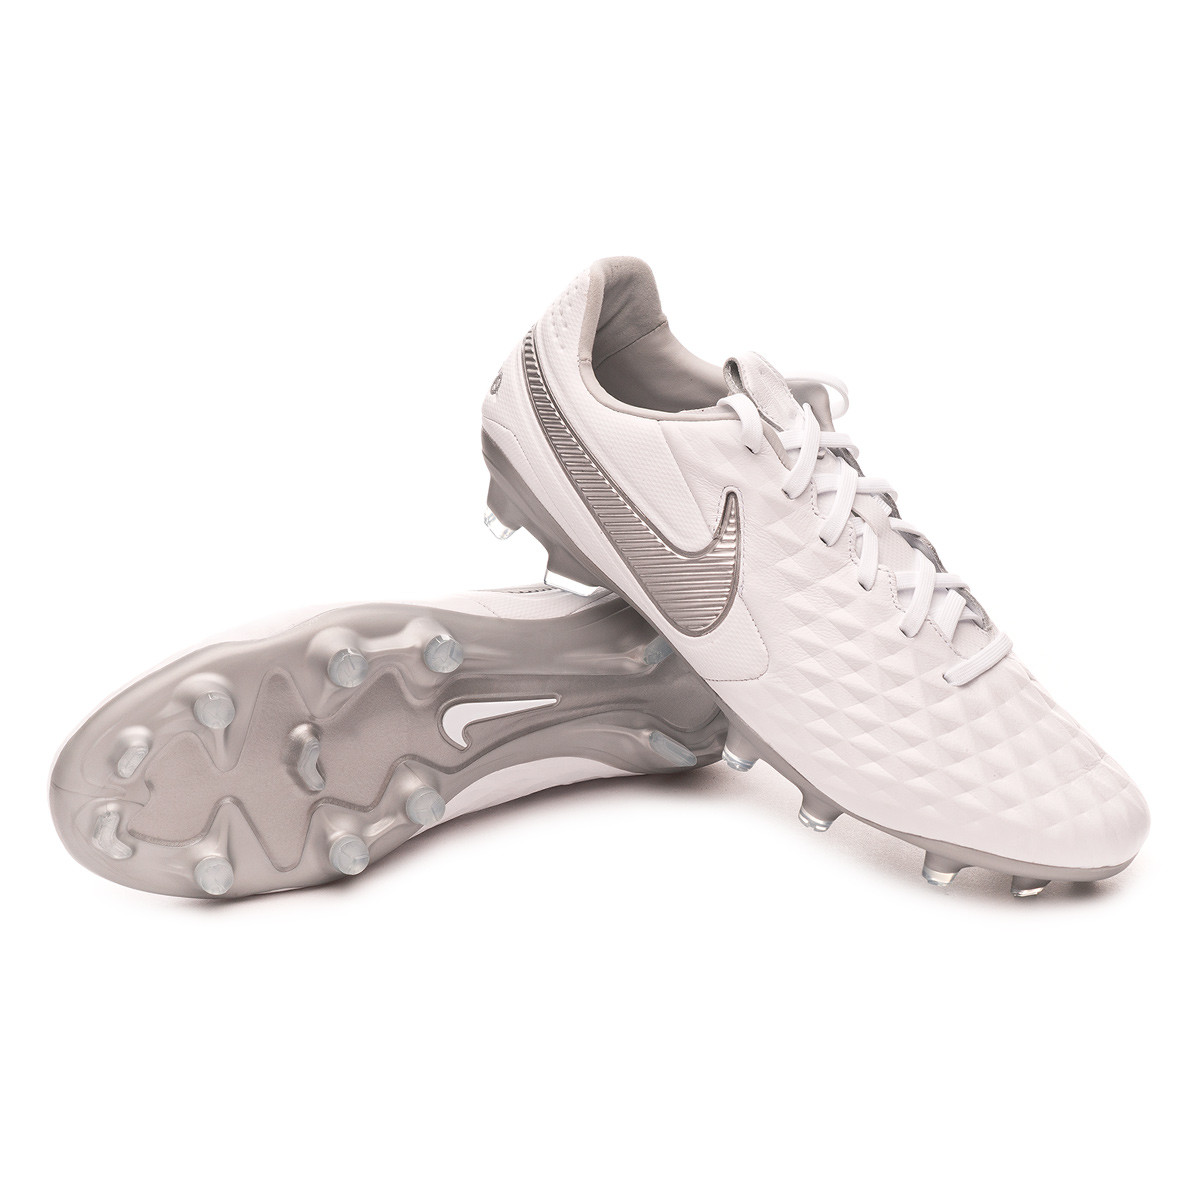 Scarpe Nike Tiempo Legend VIII Pro FG White-Chrome-Metallic silver -  Negozio di calcio Fútbol Emotion